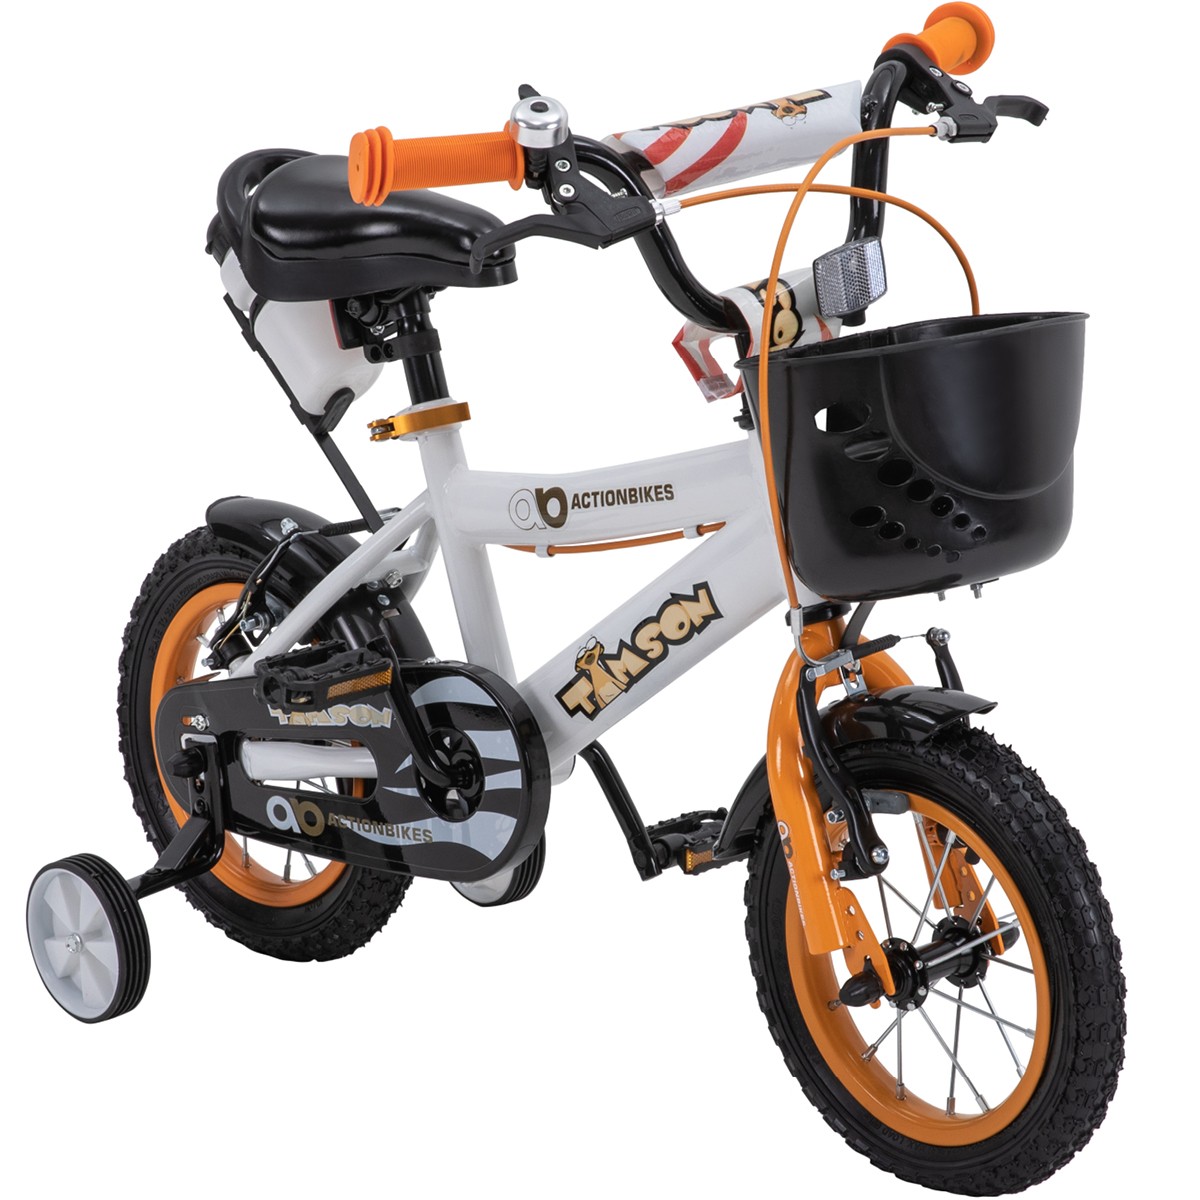 01-startbild-kinderfahrrad-12-zoll-orange-actionbikes-motors-timson